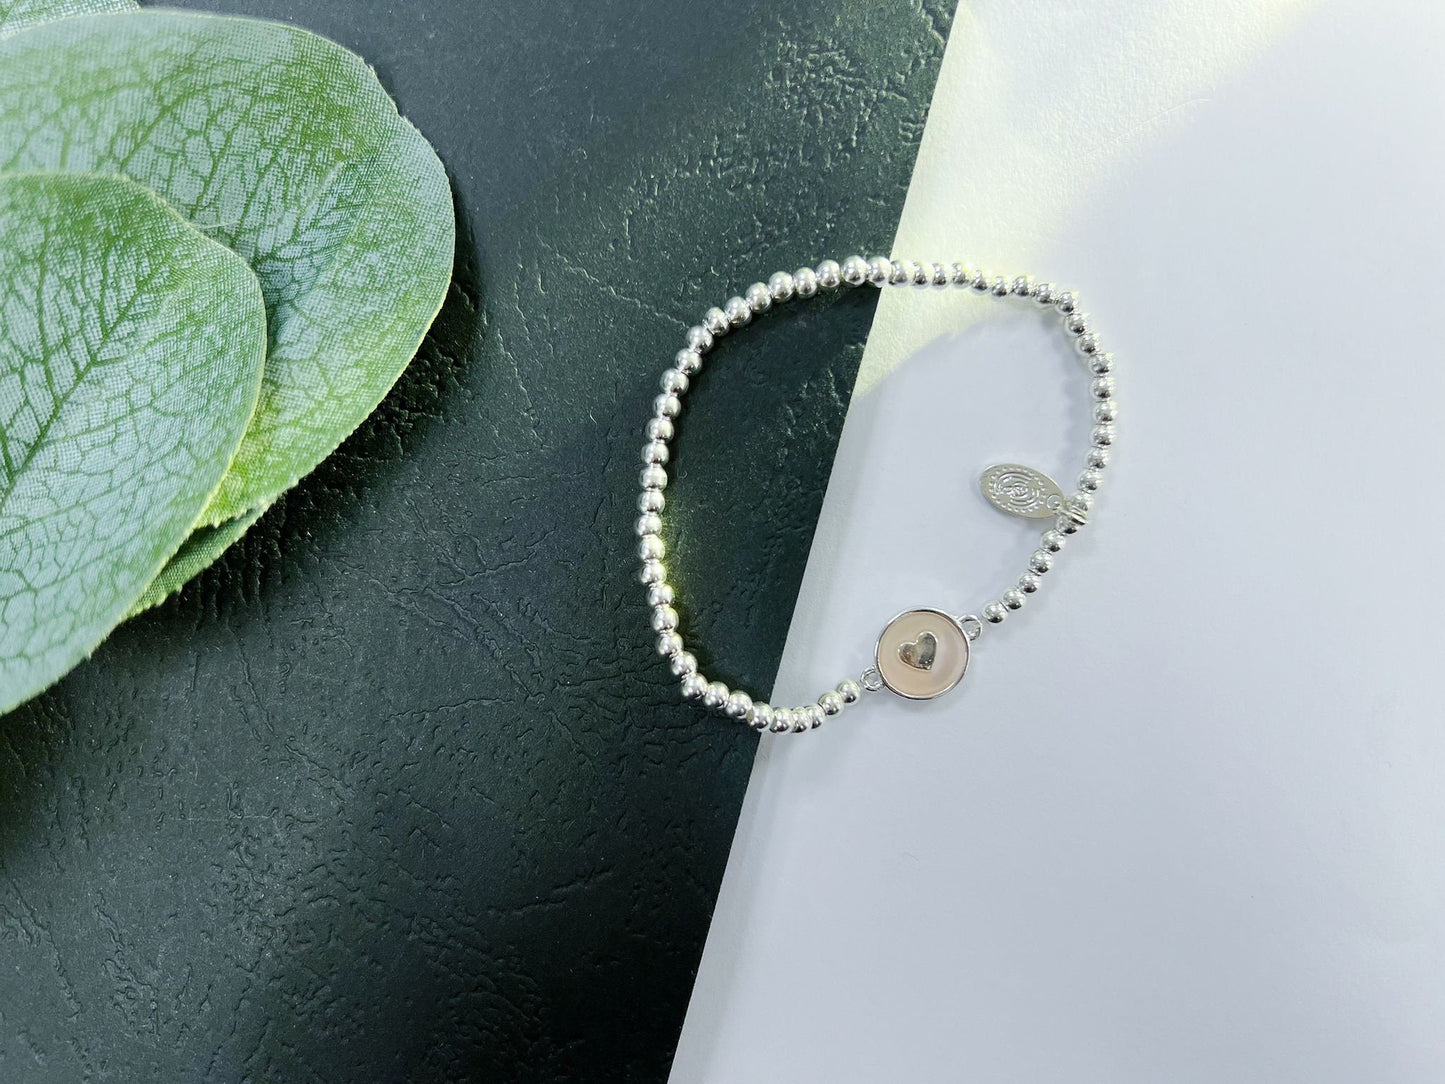 Silver Beads Kids Bracelet, Silver Beaded Elastic Mummy's Little Angle Charm Bracelet , Kids Birthday Gift For Her, Daughter bracelet,